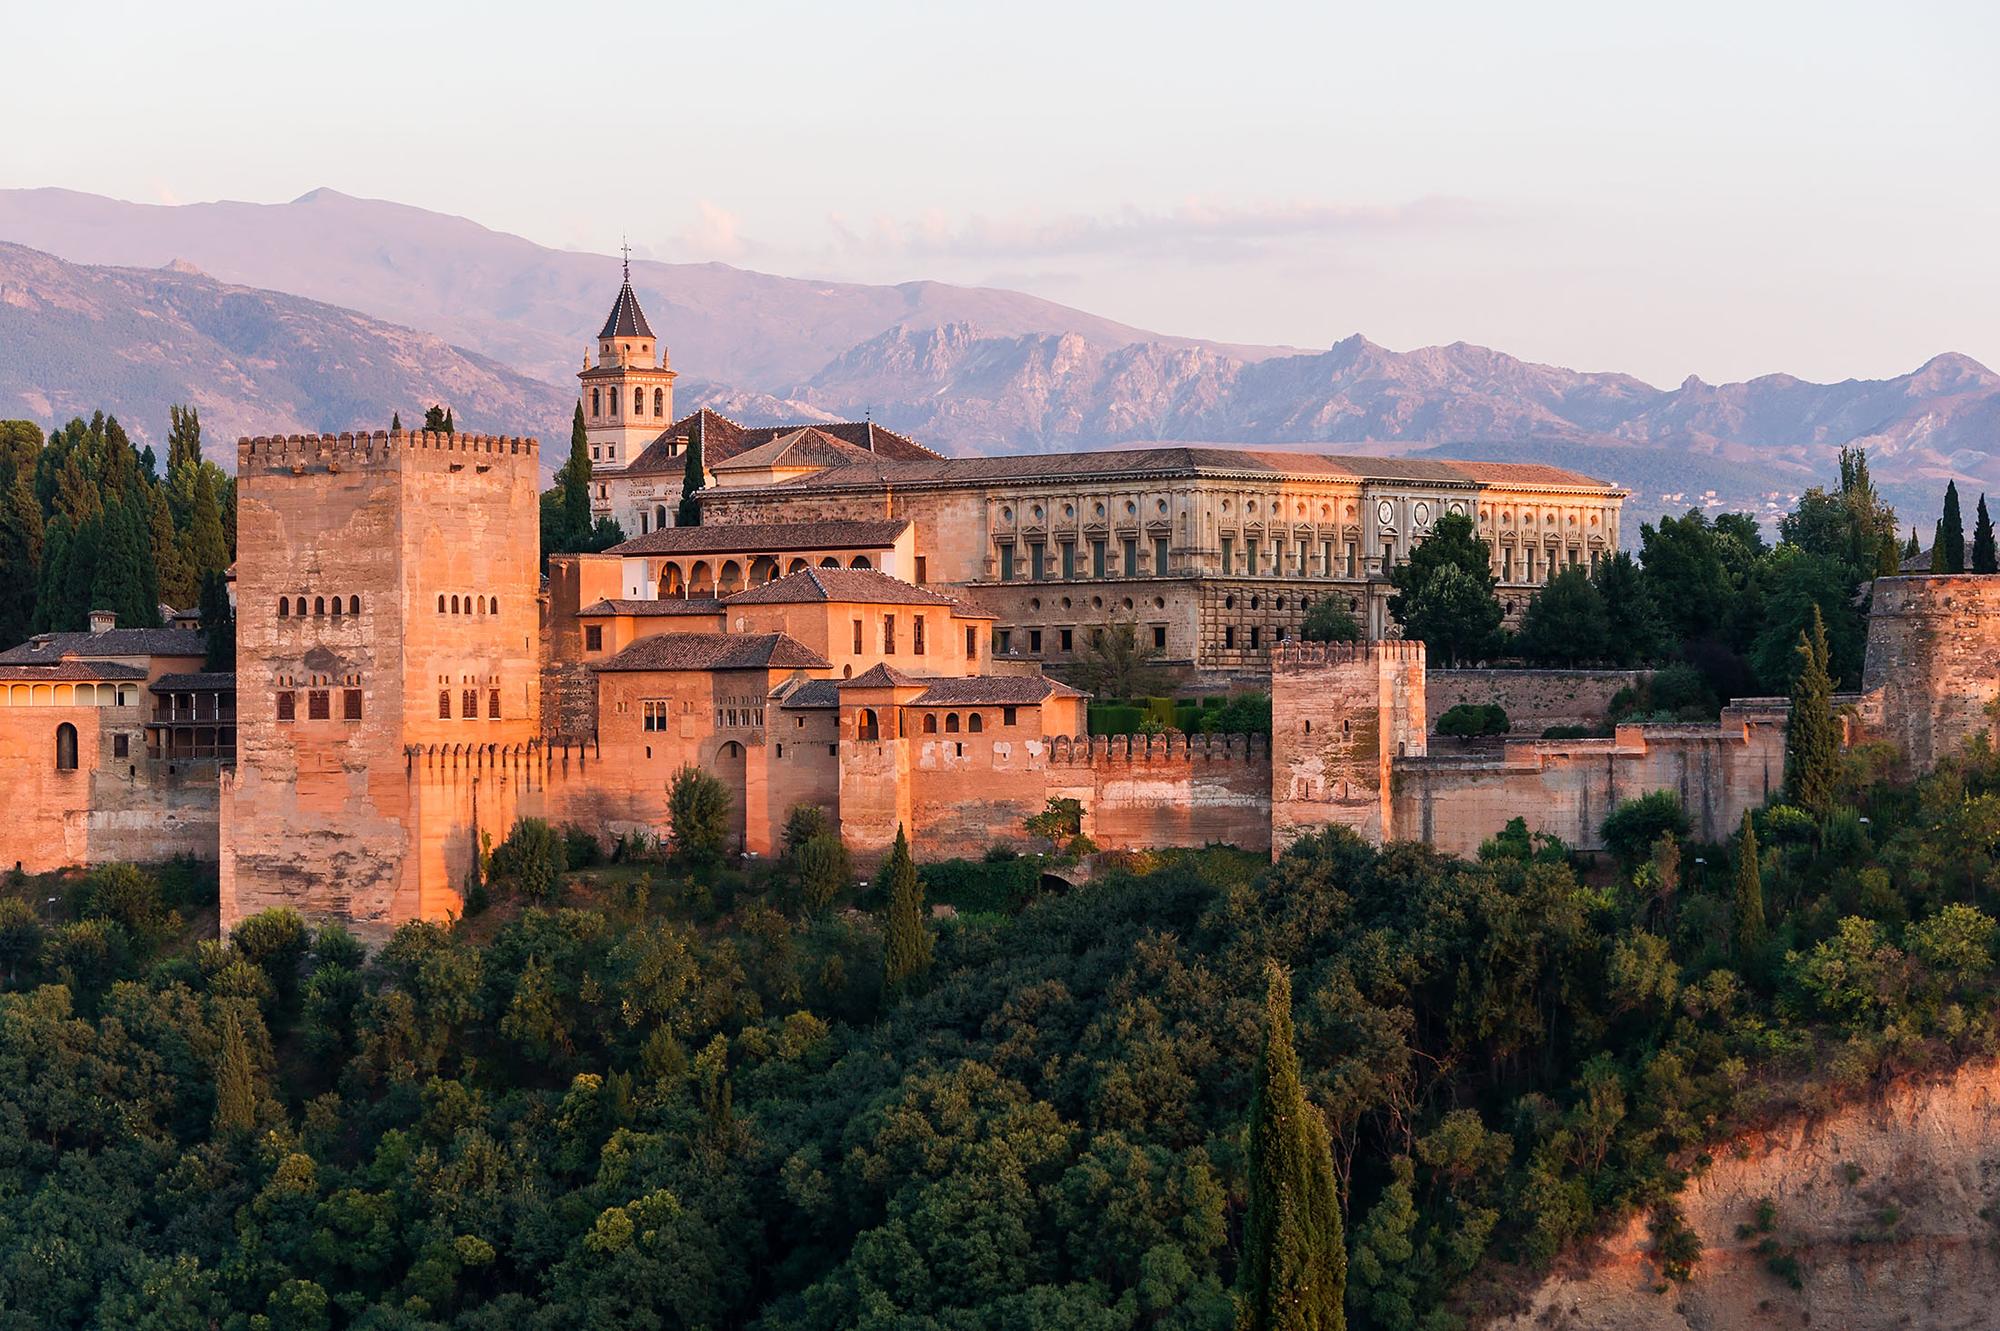 Atardecer en La Alhambra, ciudad palatina andalusí situada en Granada